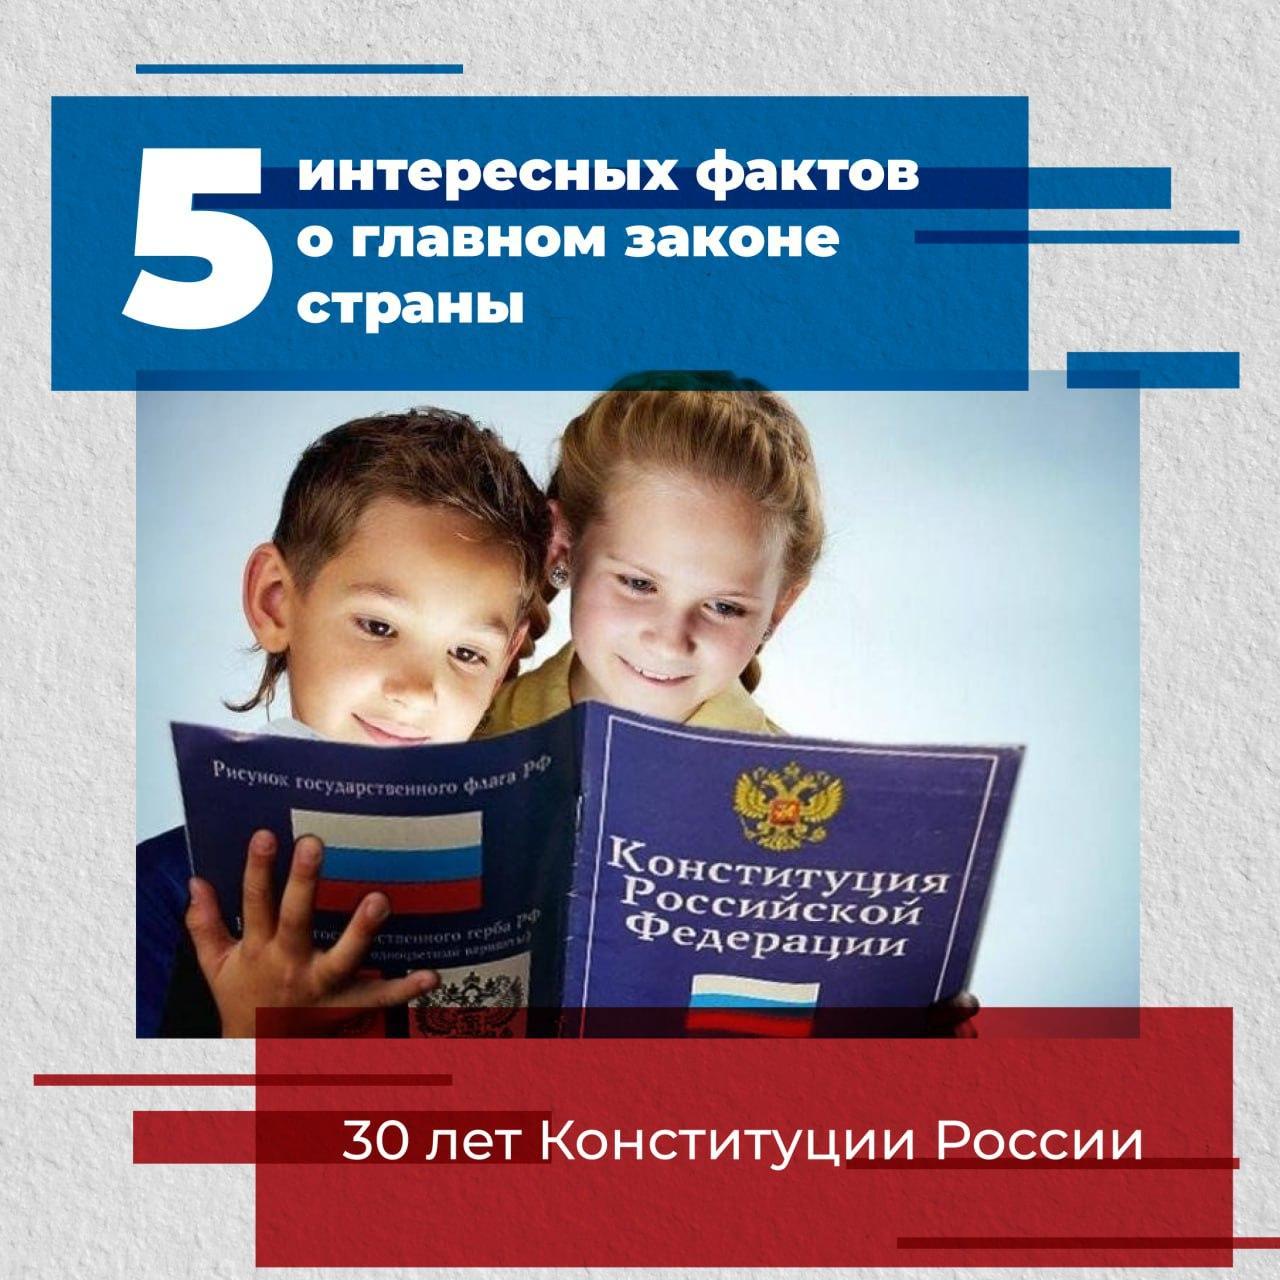 12 декабря —День Конституции Российской Федерации.